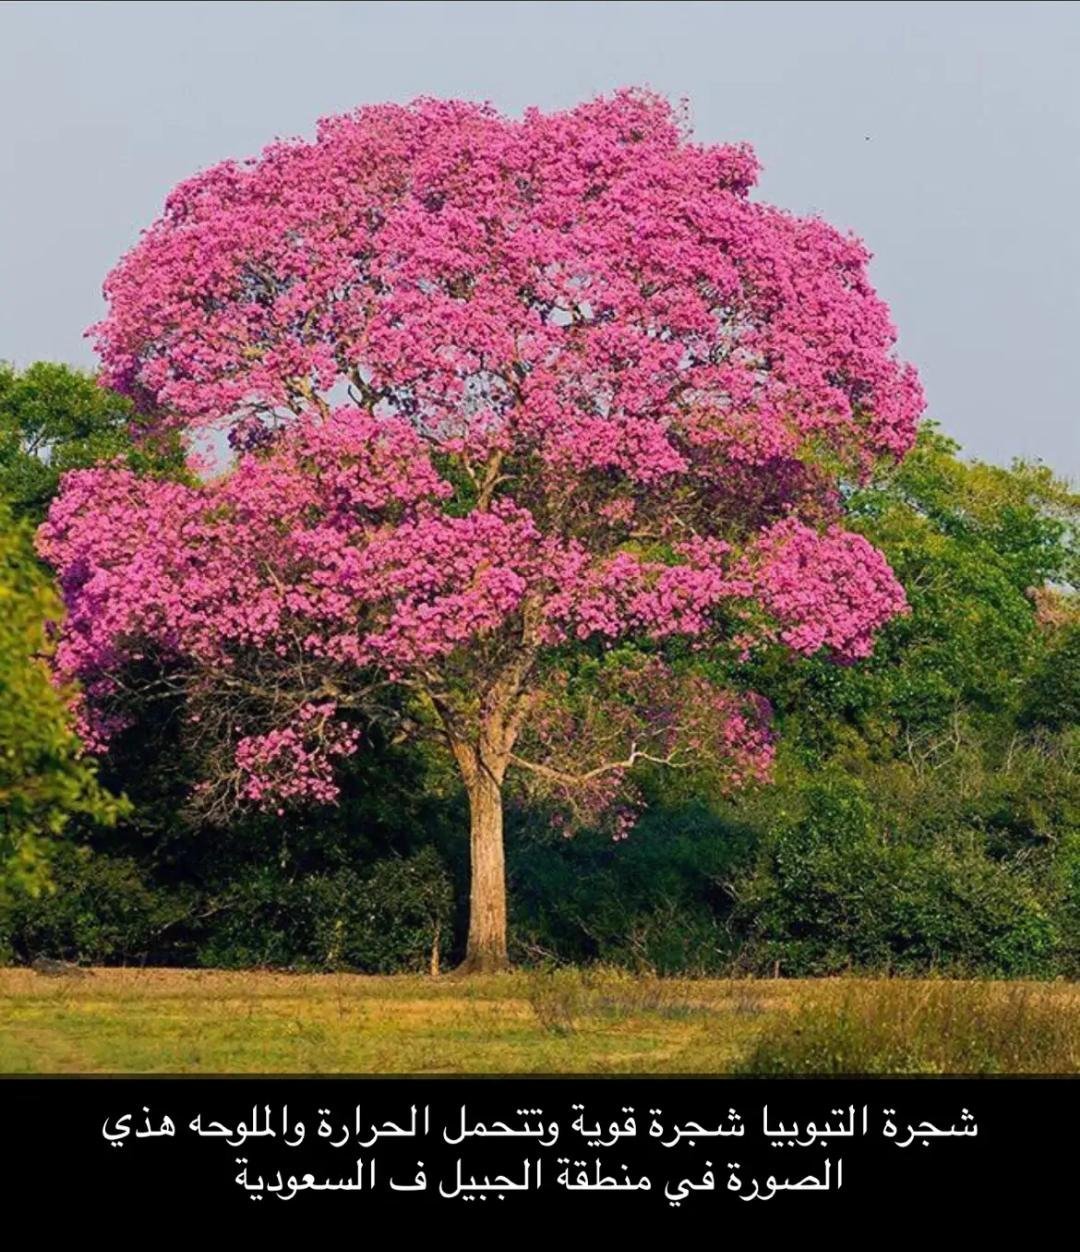 Дерево цветет розовым цветом название. Табебуйя дерево. Муравьиное дерево табебуйя. Табебуйя розовая (Tabebuia rosea). Муравьнле деркво табибуйа.